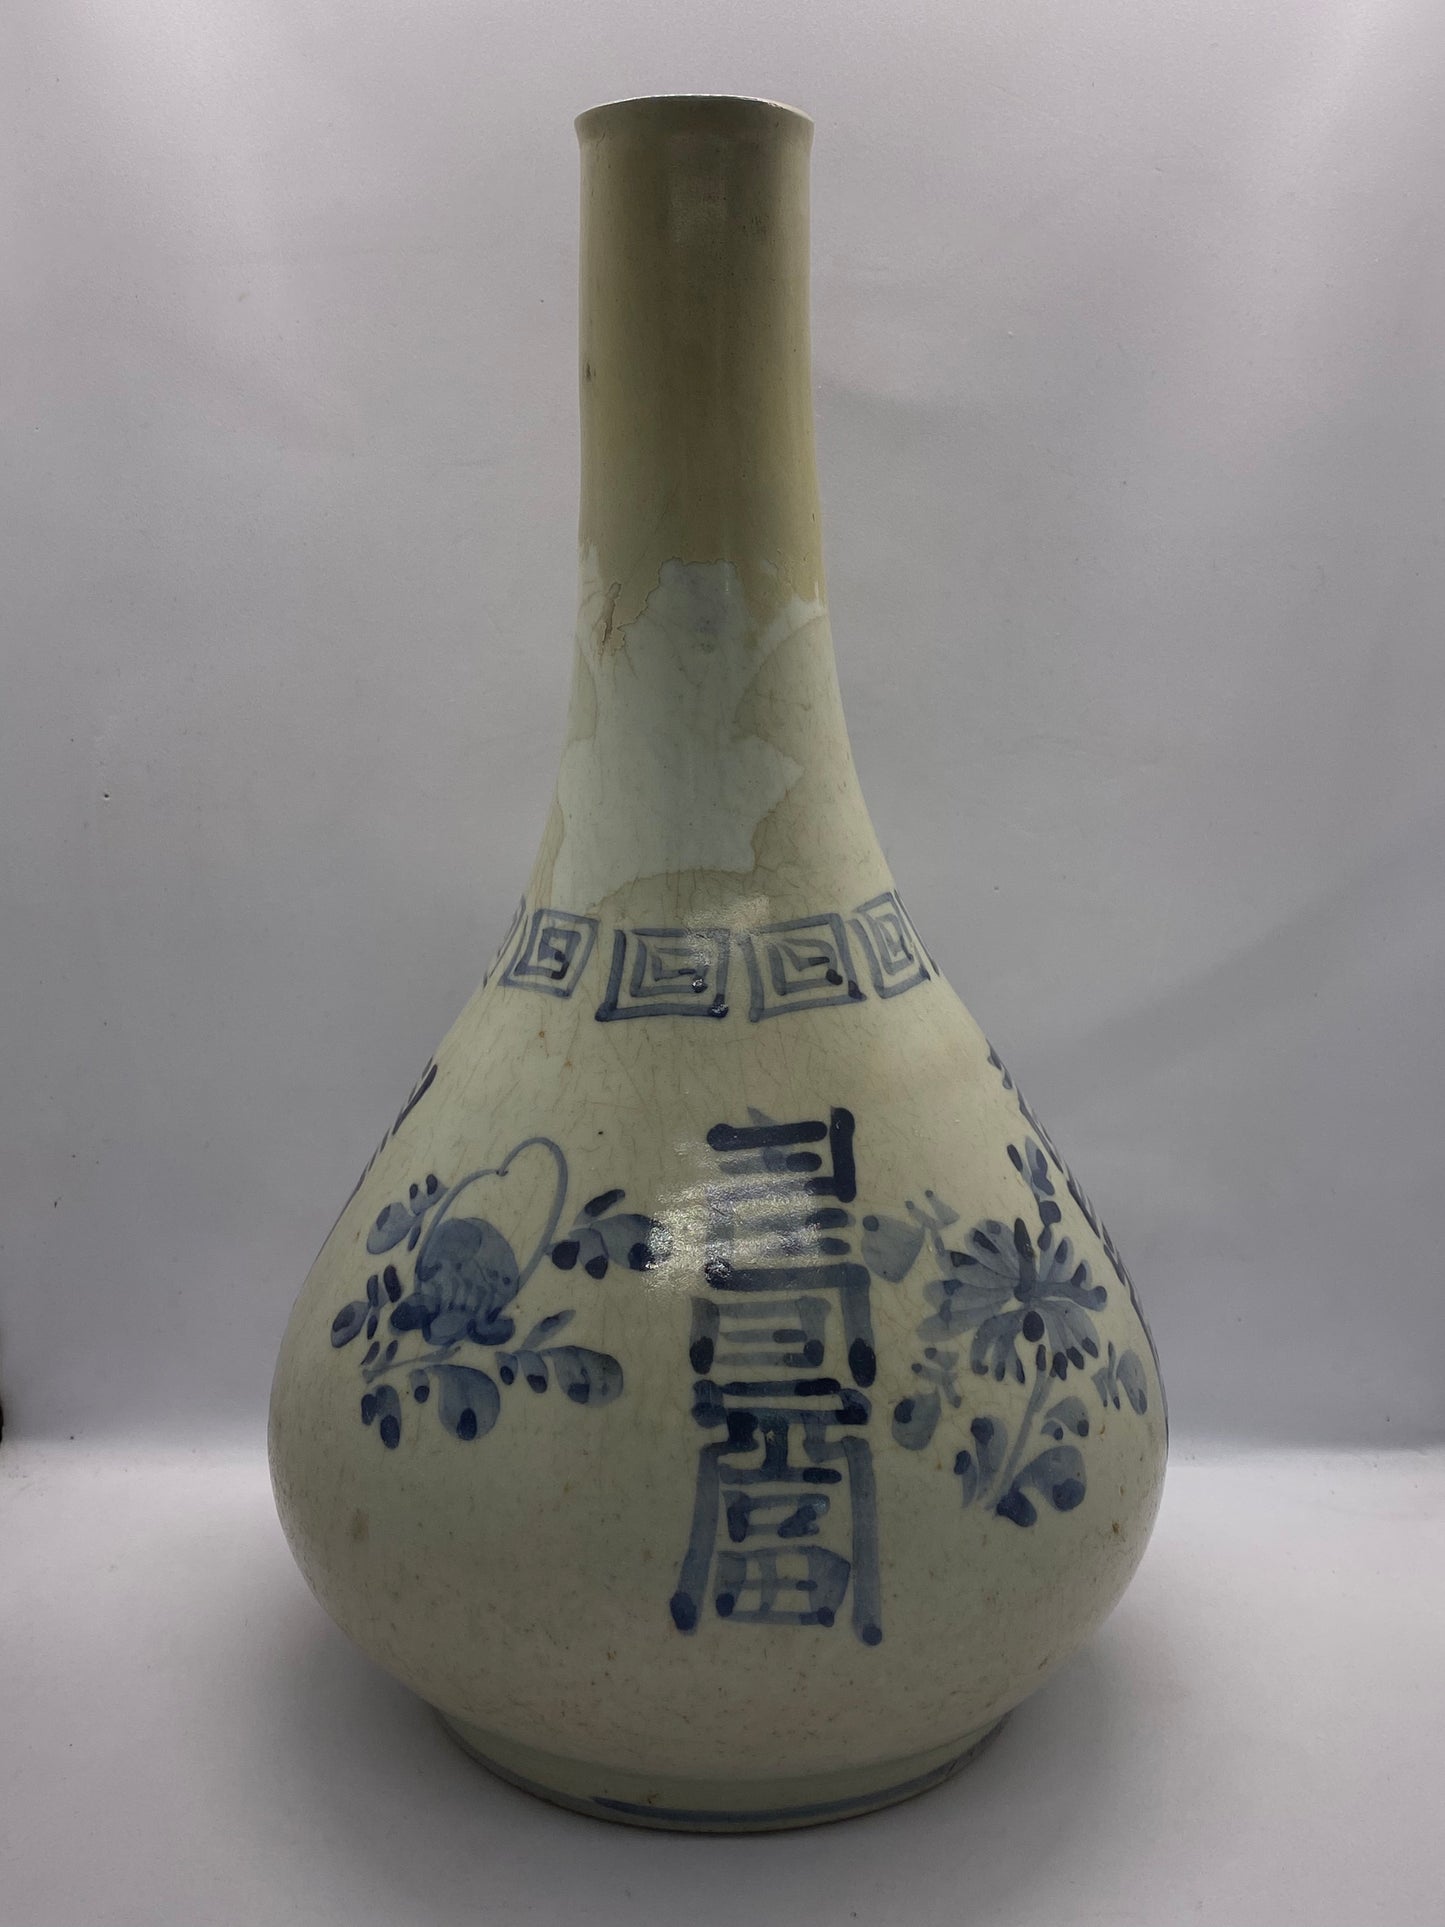 朝鲜时代晚期瓶形花瓶（十九世纪），钴釉白瓷